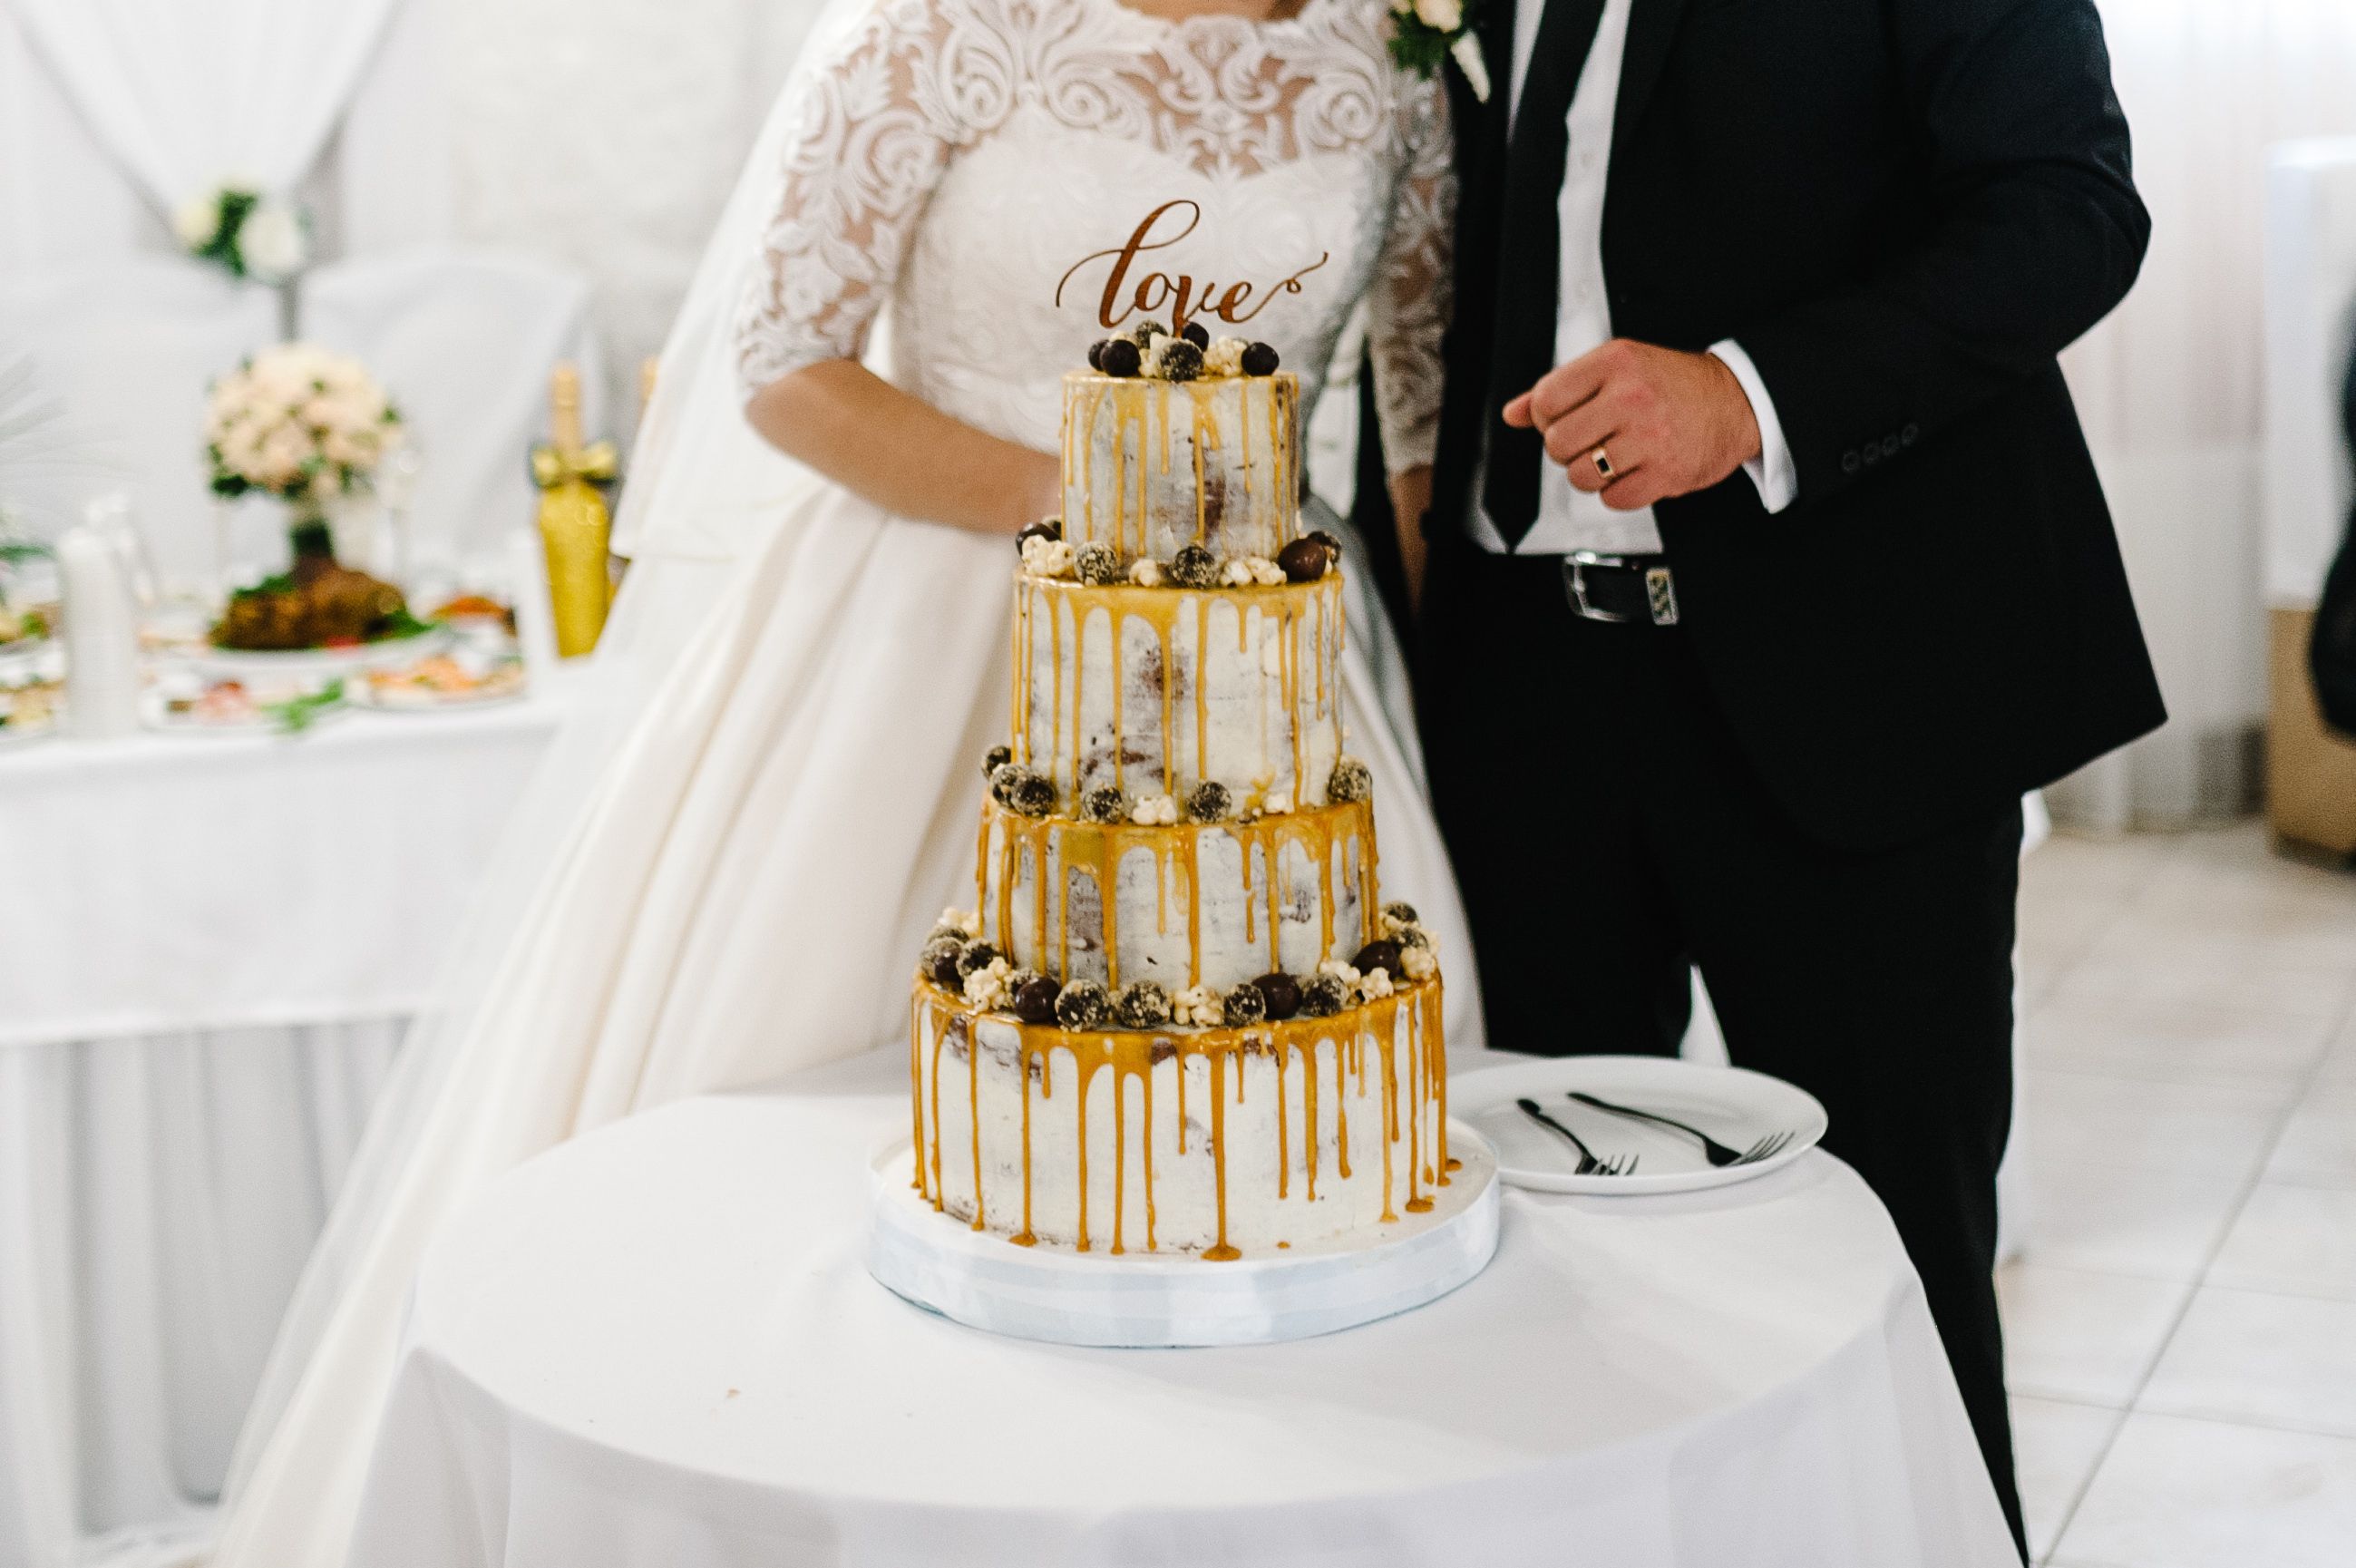 Una pareja de novios obliga a los invitados a pagar el pastel de su boda